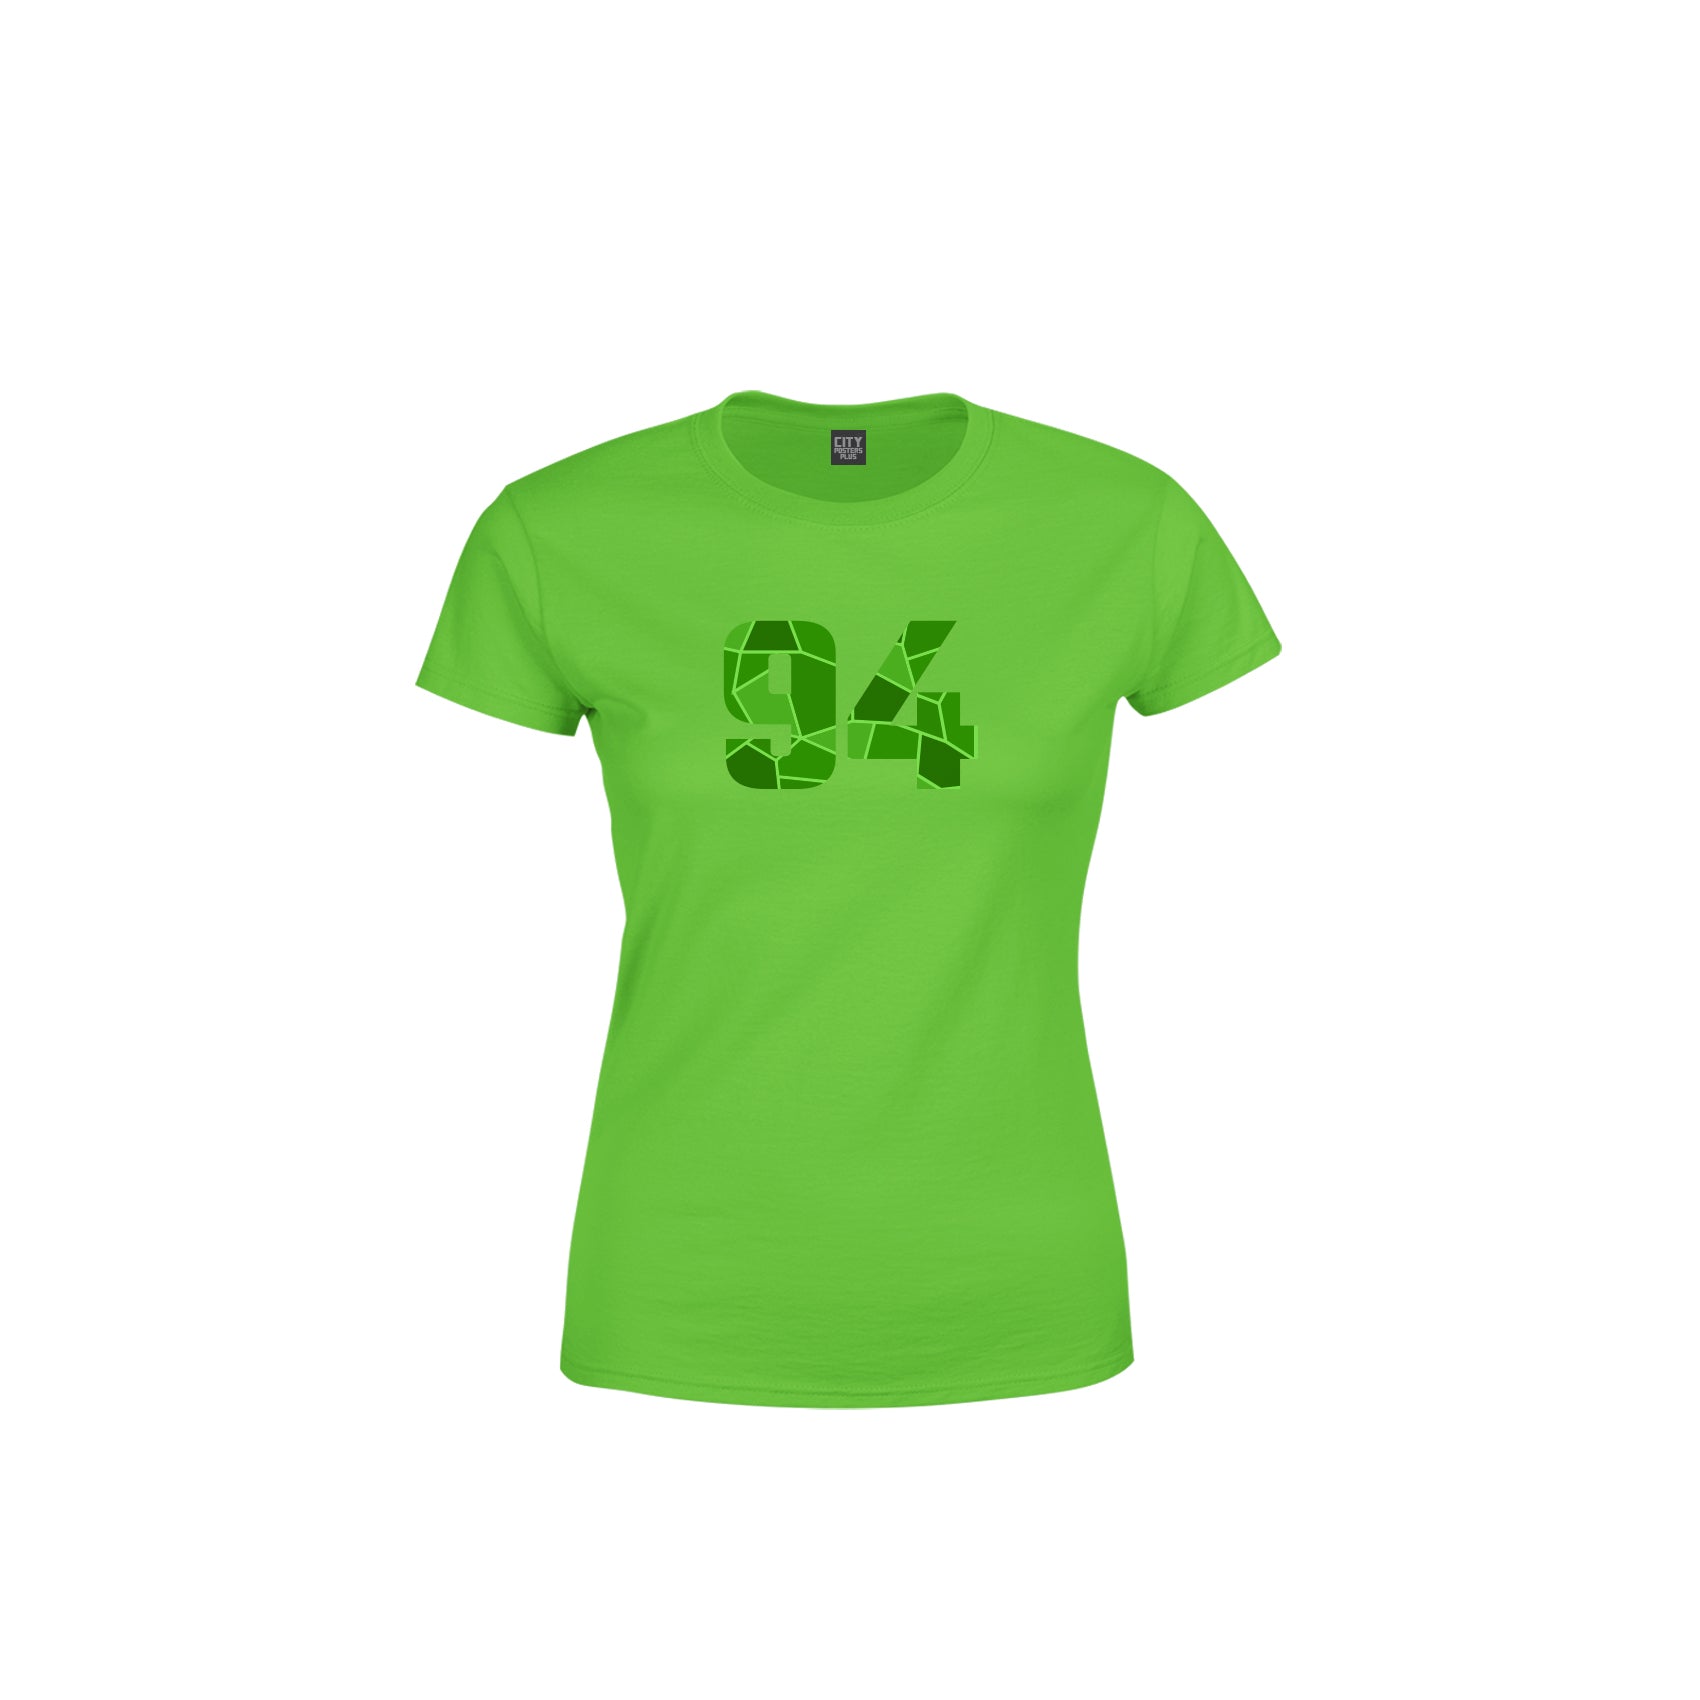 94 Number Women's T-Shirt (Liril Green)